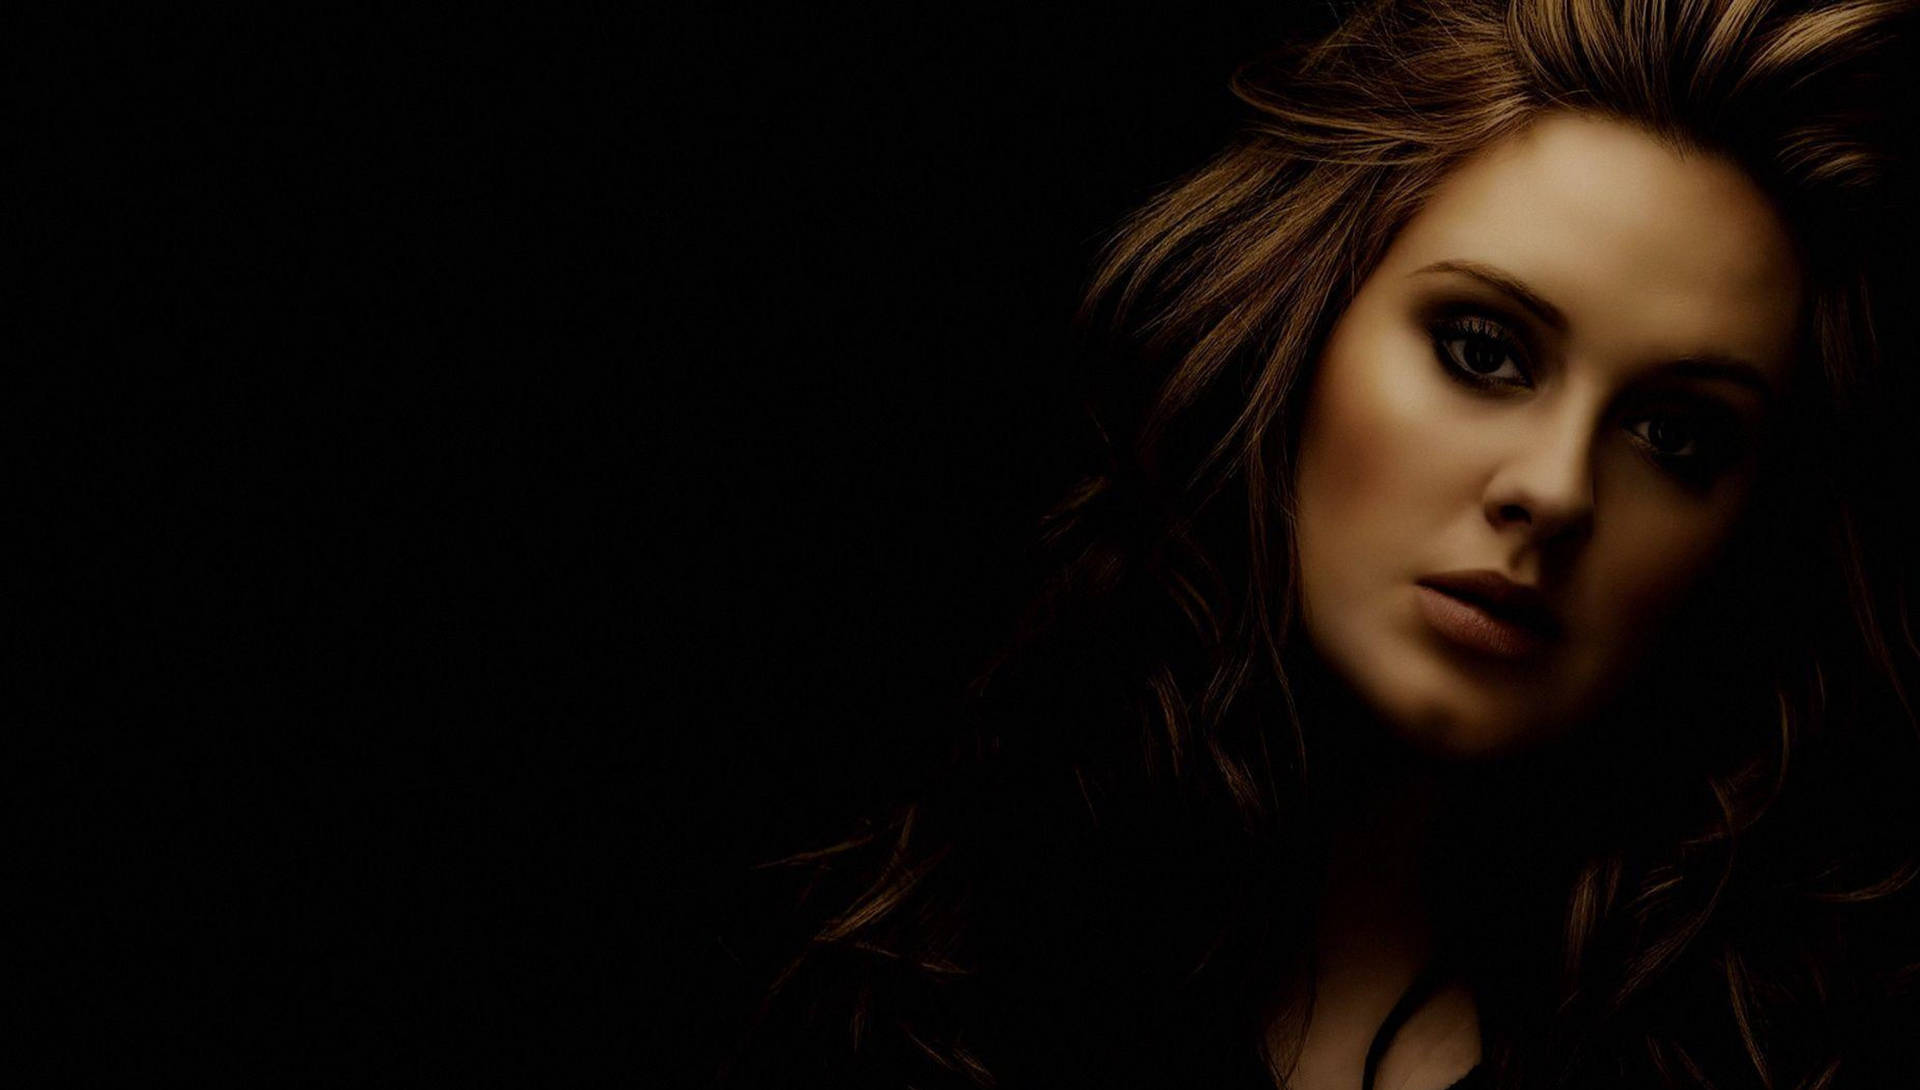 Adele Dark Photoshoot Background